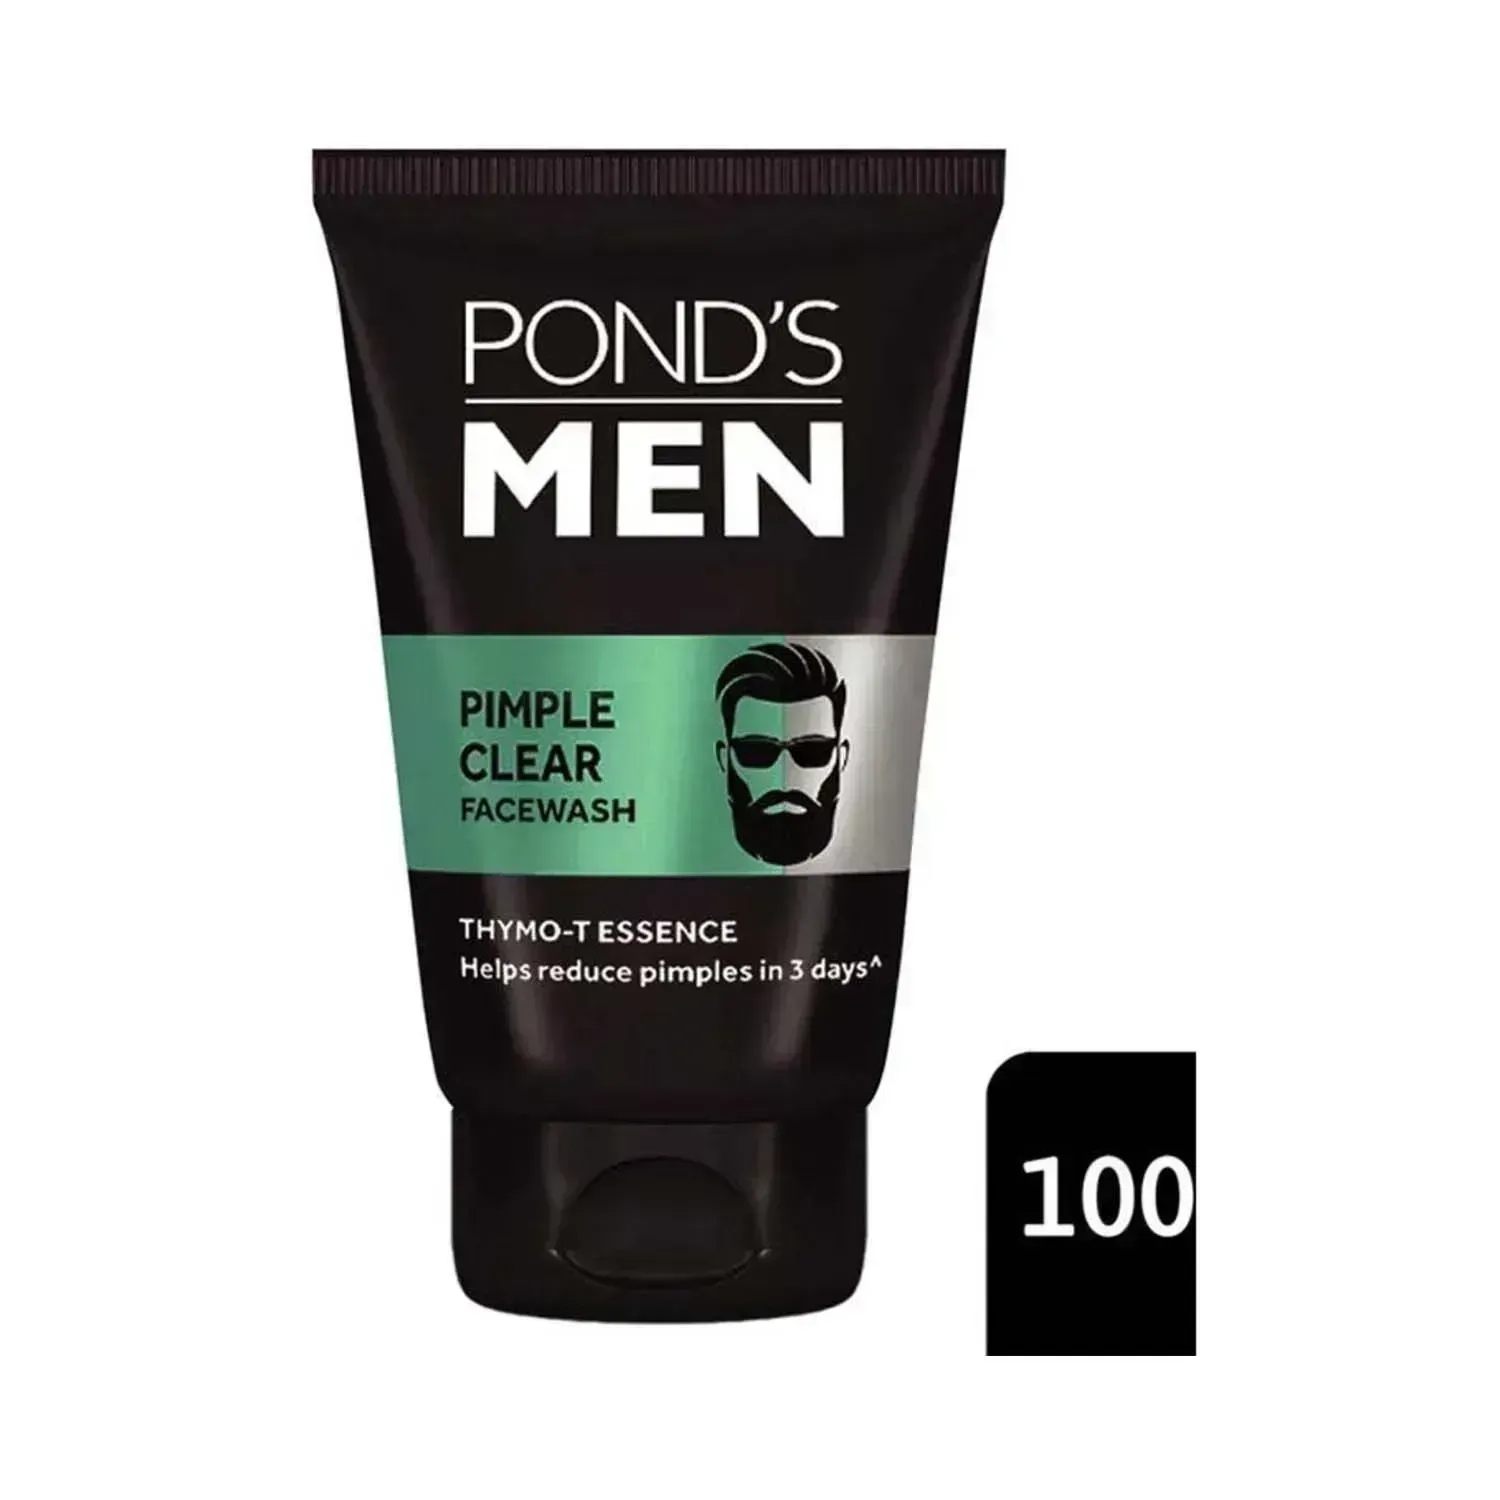 Pond's Men Pimple Clear Facewash - (100g)